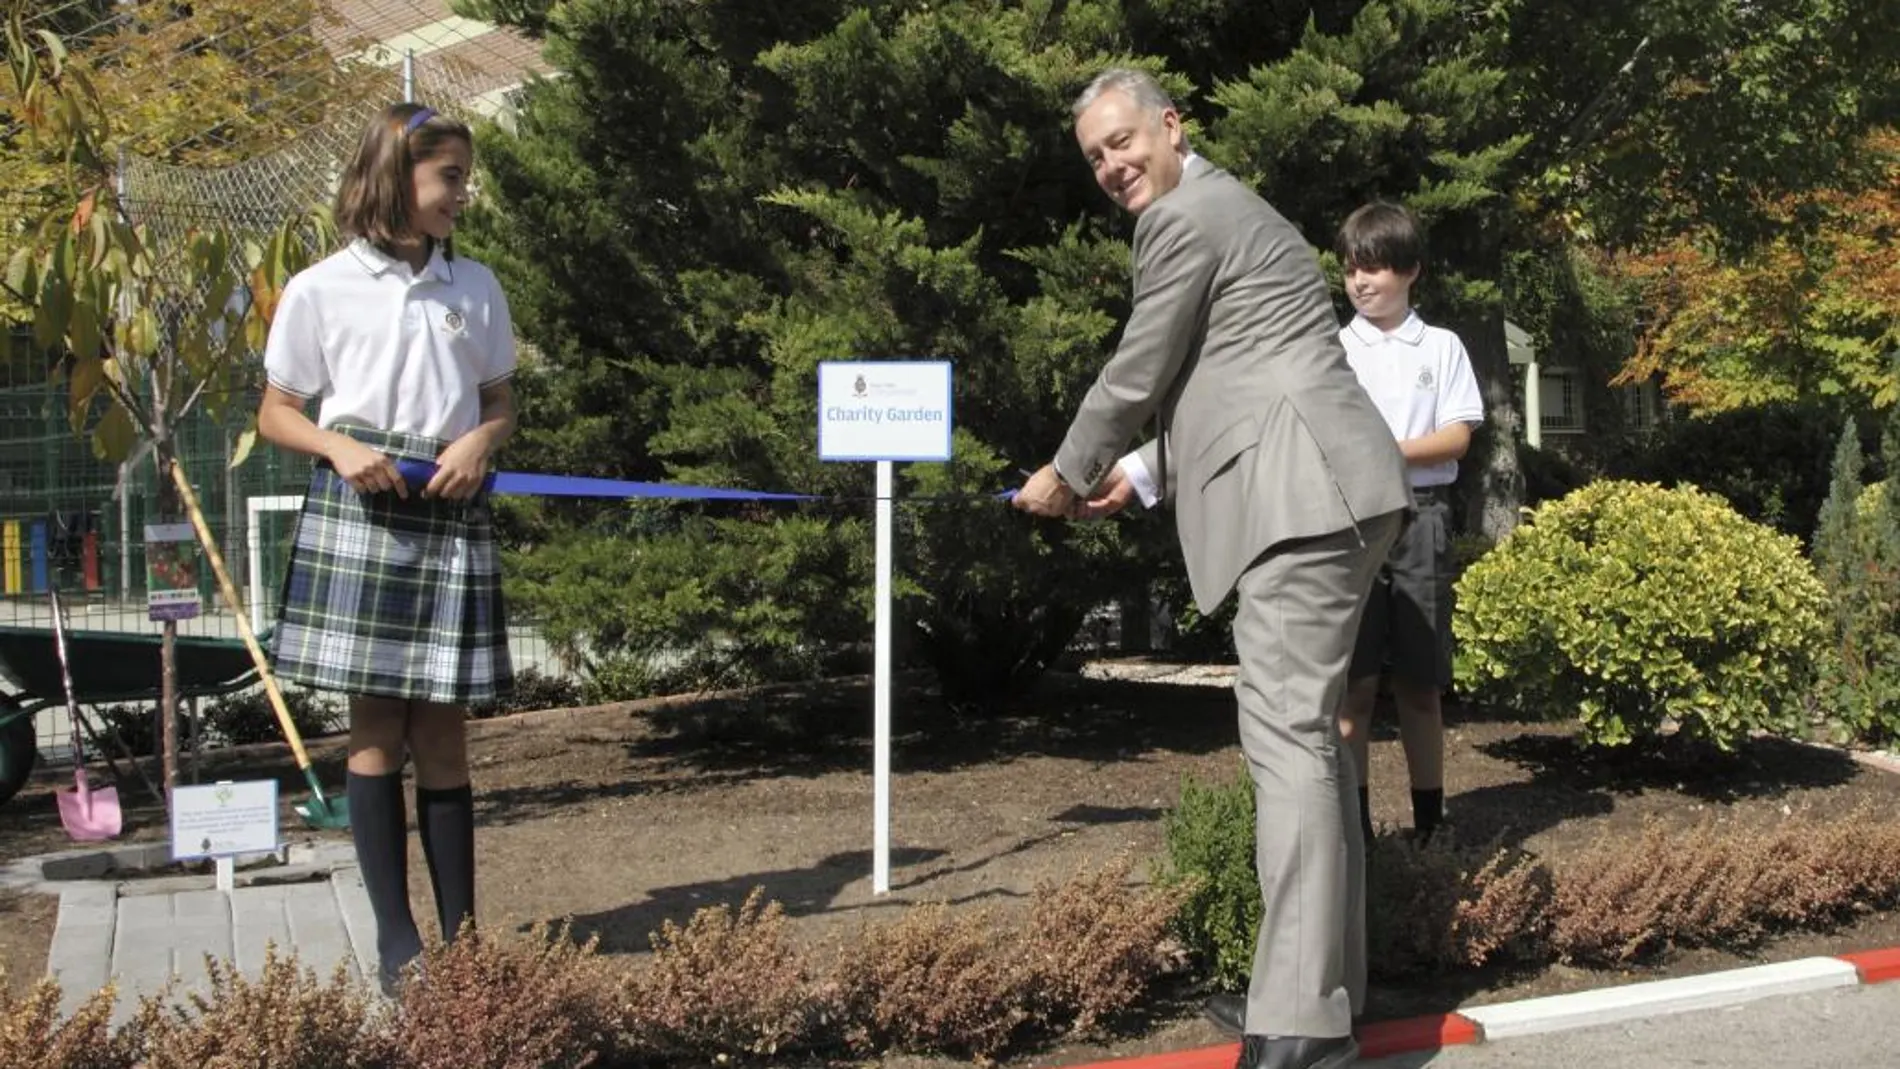 El embajador Manley inaugura el Charity Garden